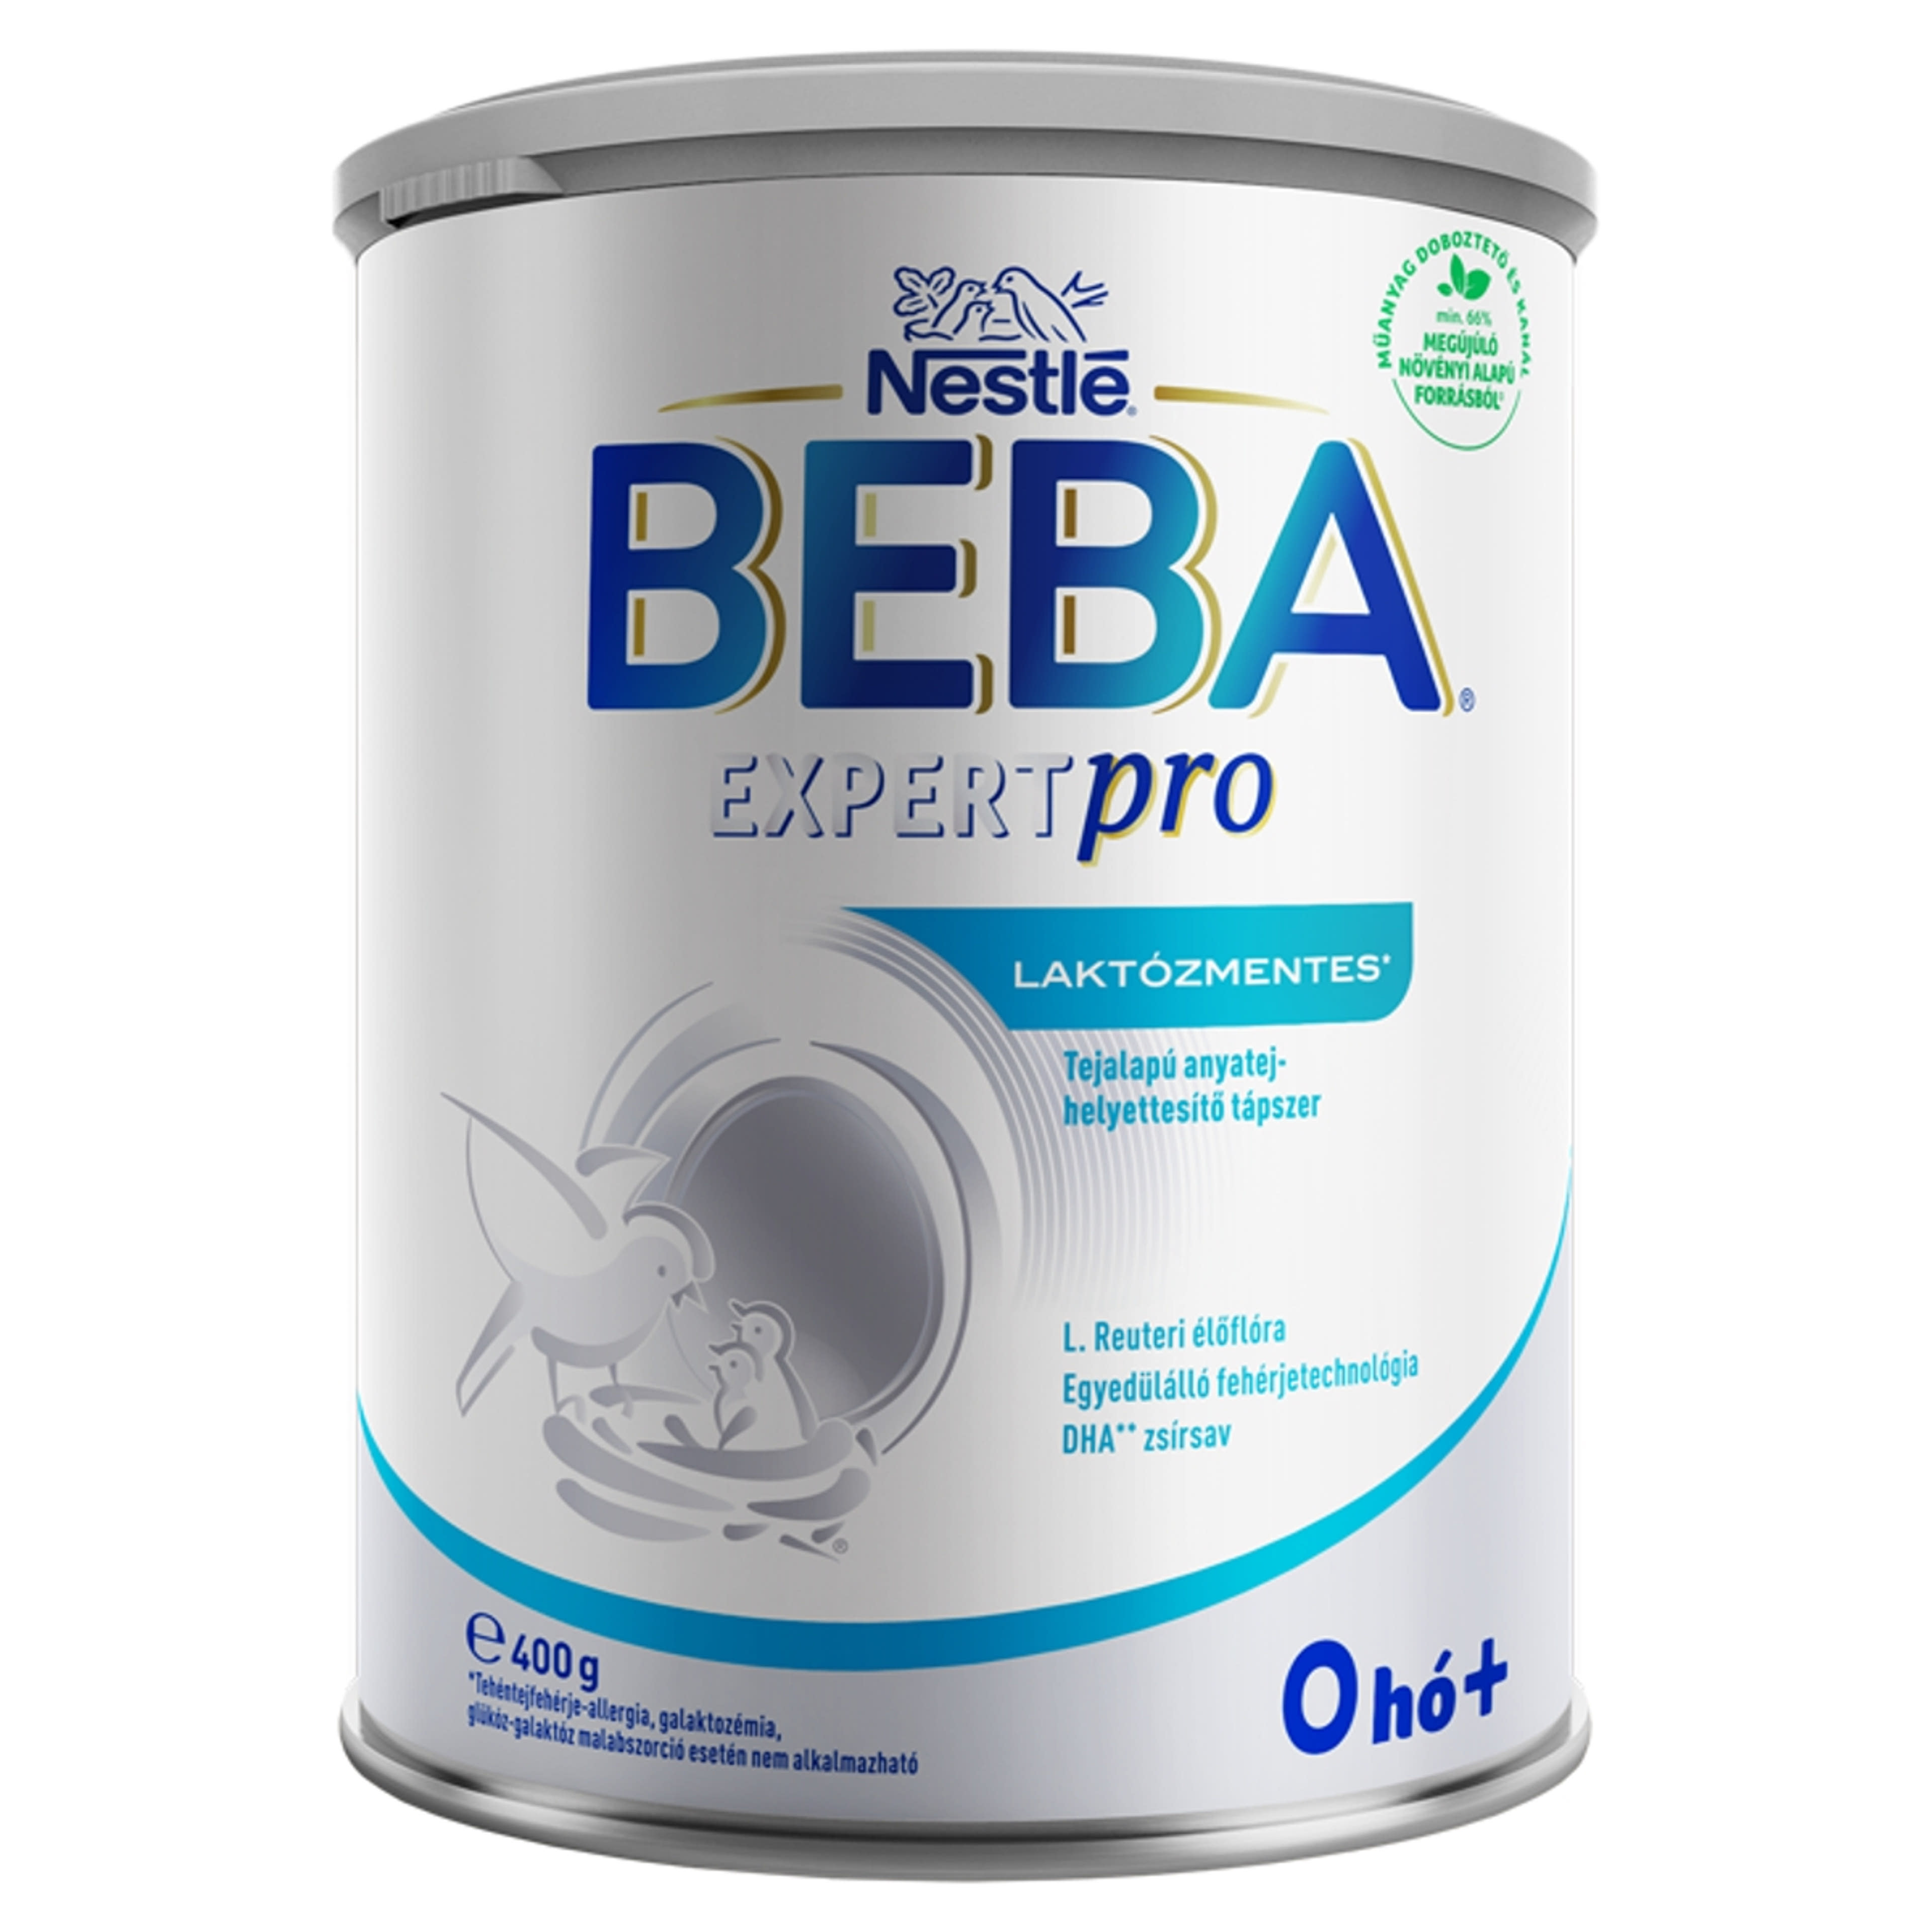 Beba Expertpro laktózmentes tejalapú anyatej-helyettesítő tápszer 0 hónapos kortól - 400 g-1